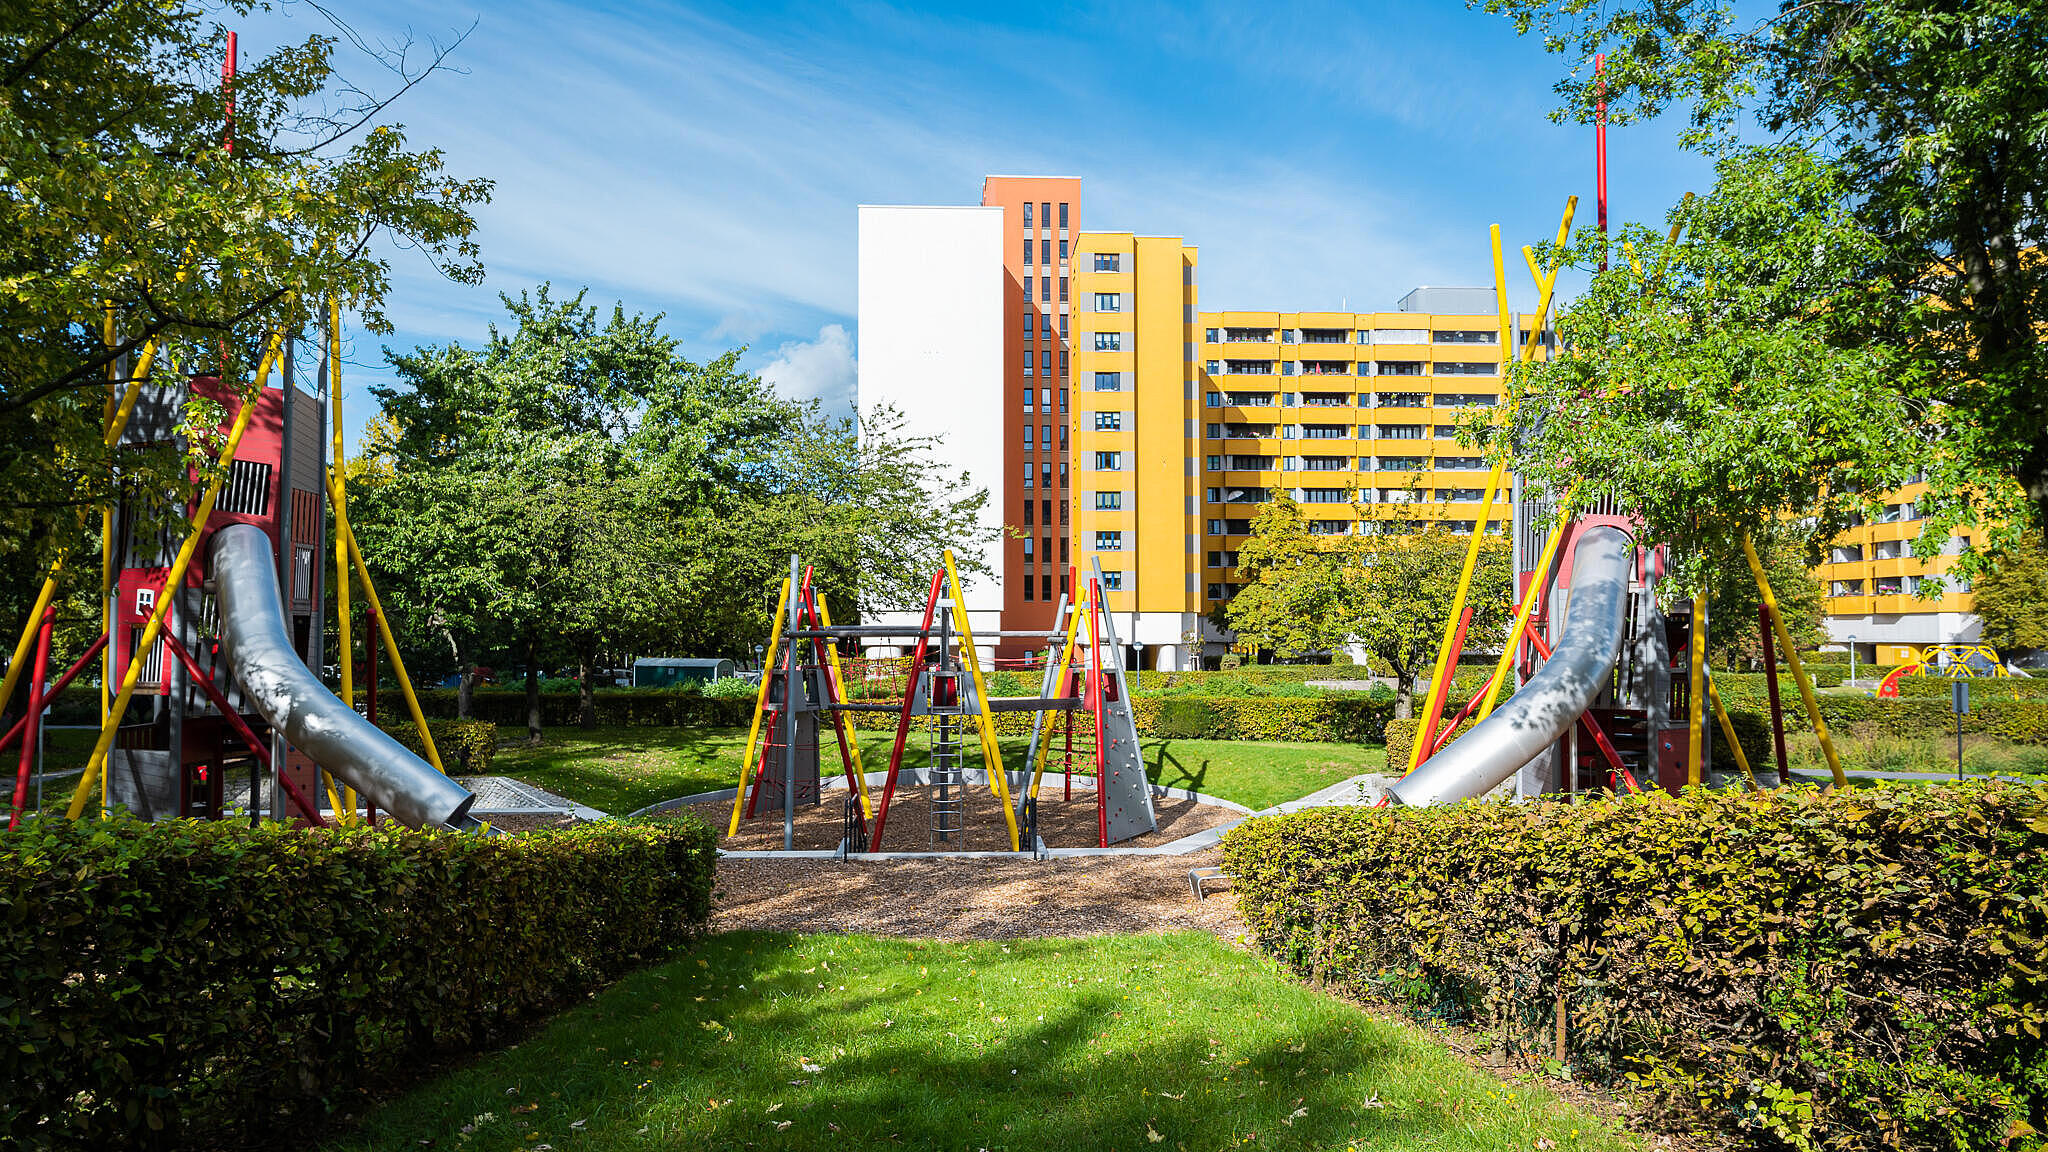 Bild zeigt neugestaltete Grünanlagen und Spielgerüst mit Rutschen. Im Hintergrund Bäume und Wohnhaus.